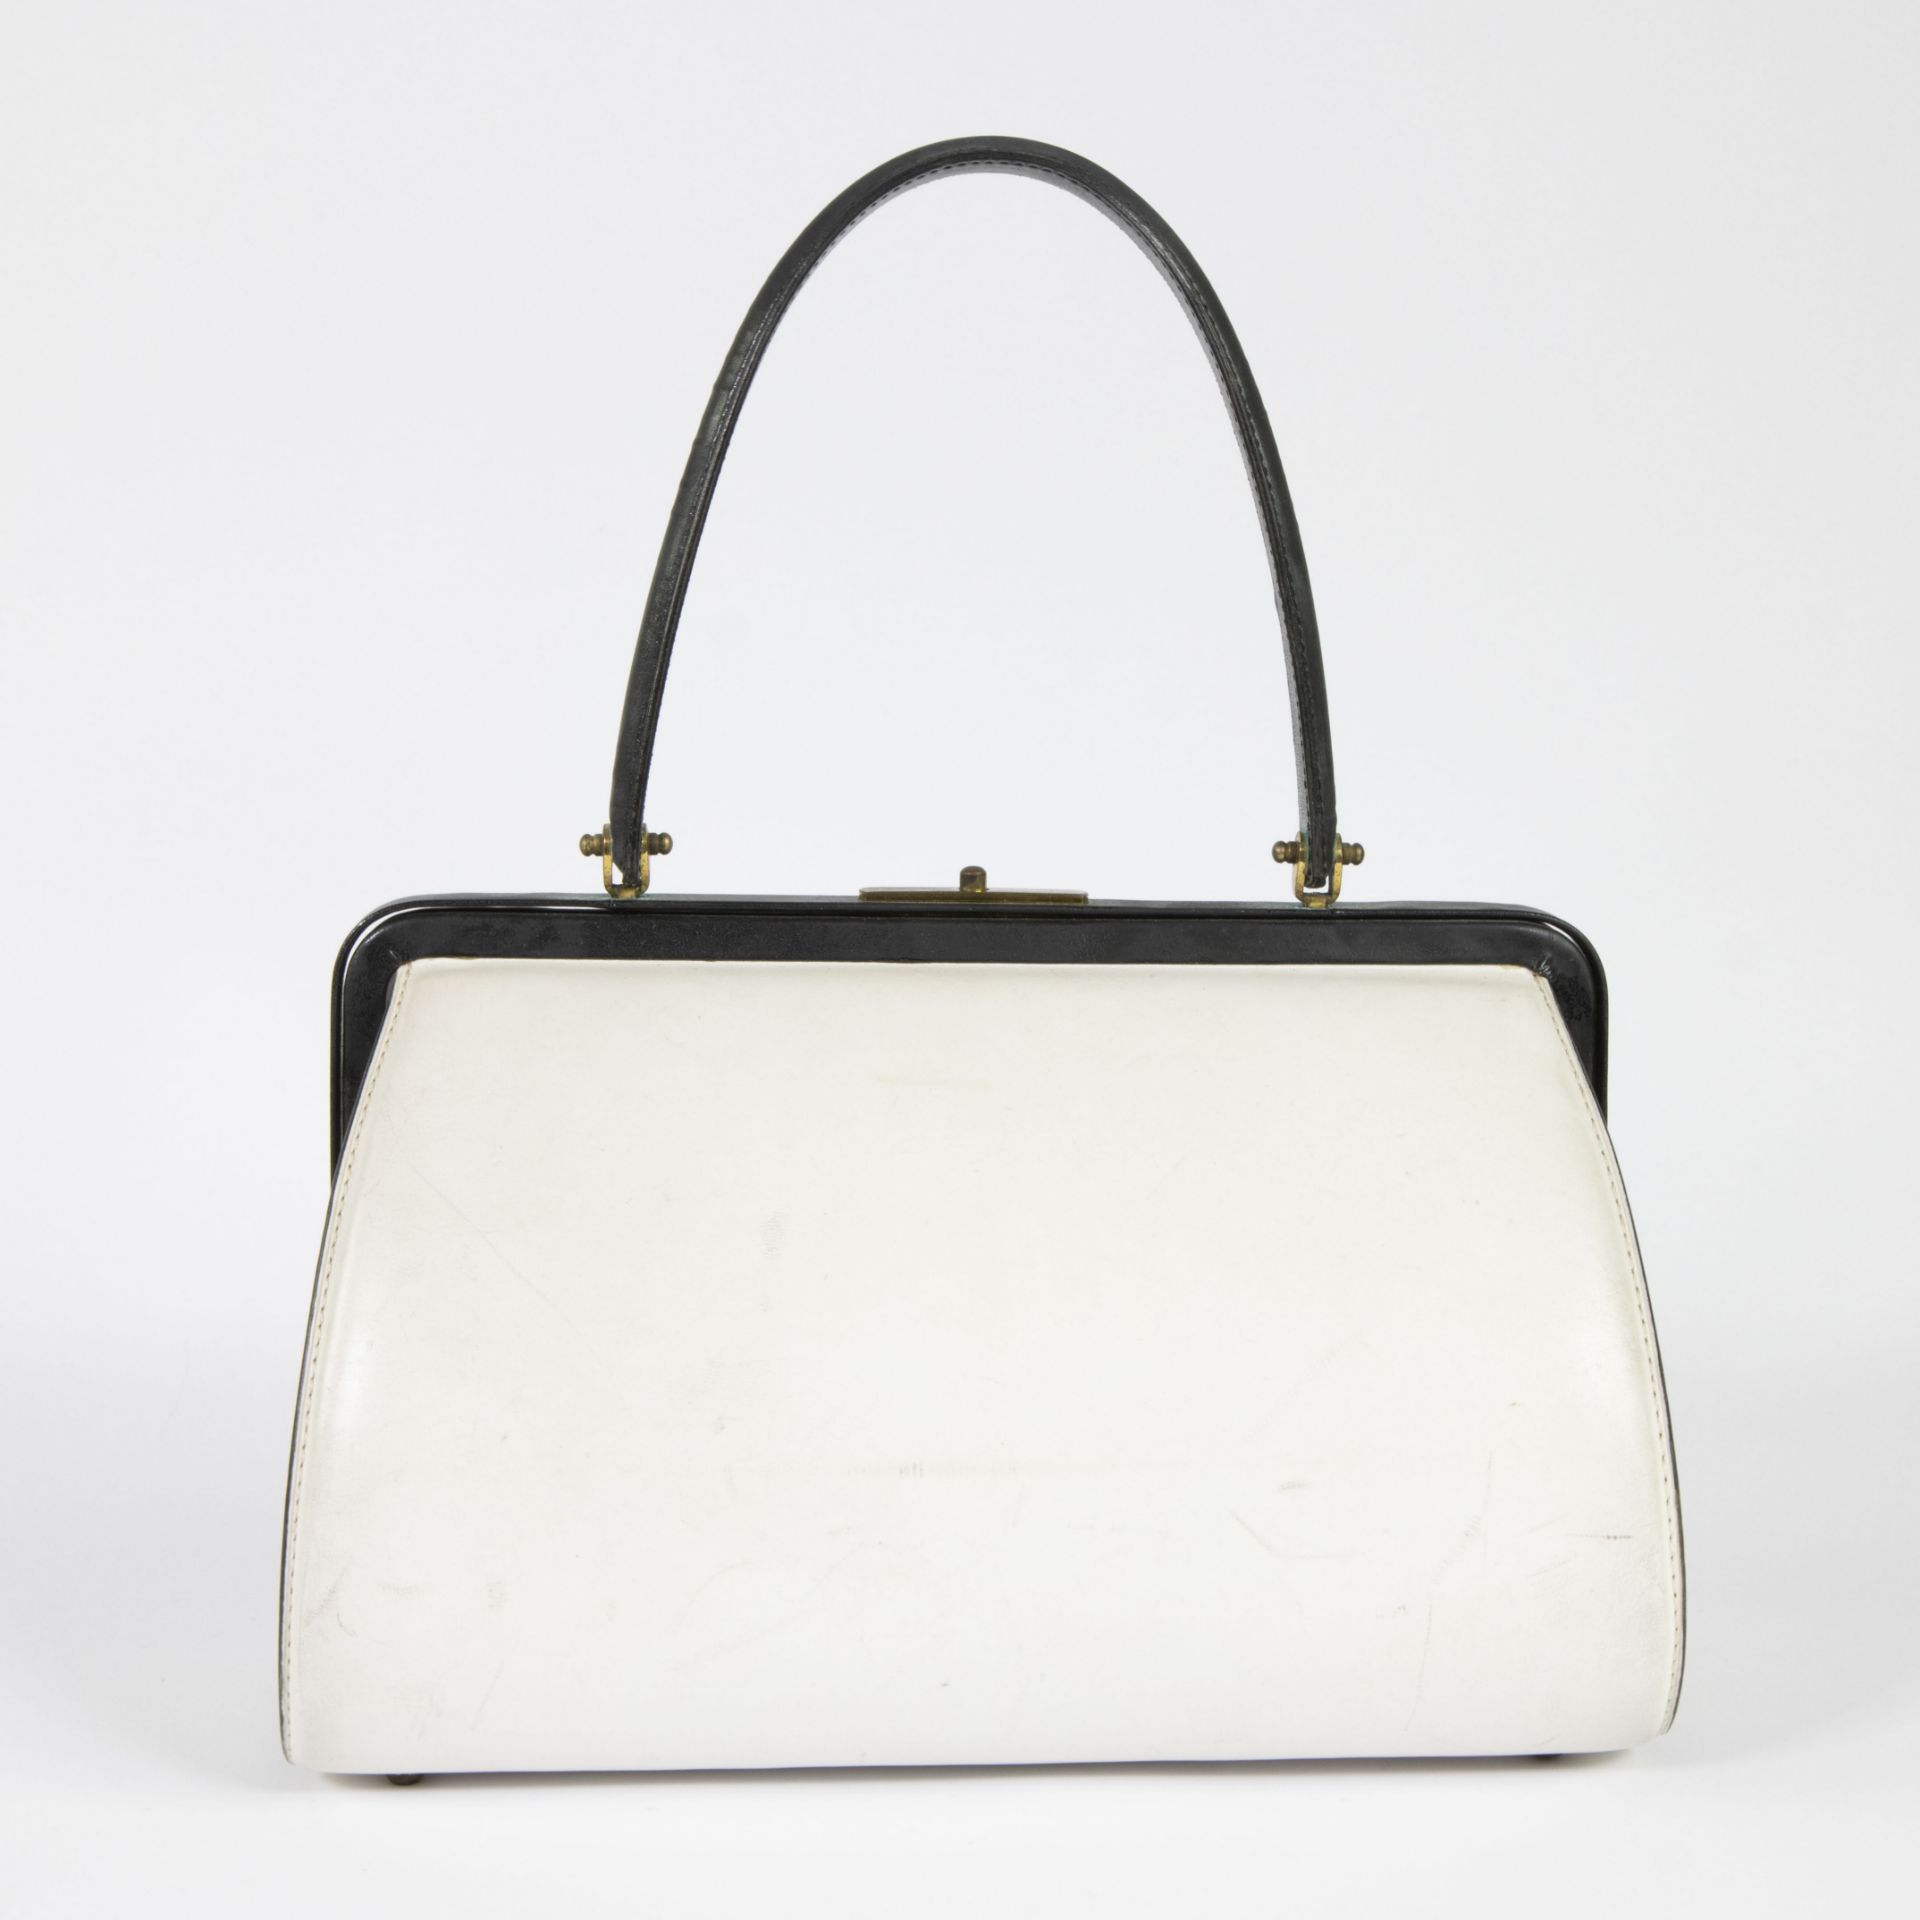 Lot Devaux leather black/white handbag model Touquet and leather pochette - Bild 8 aus 10